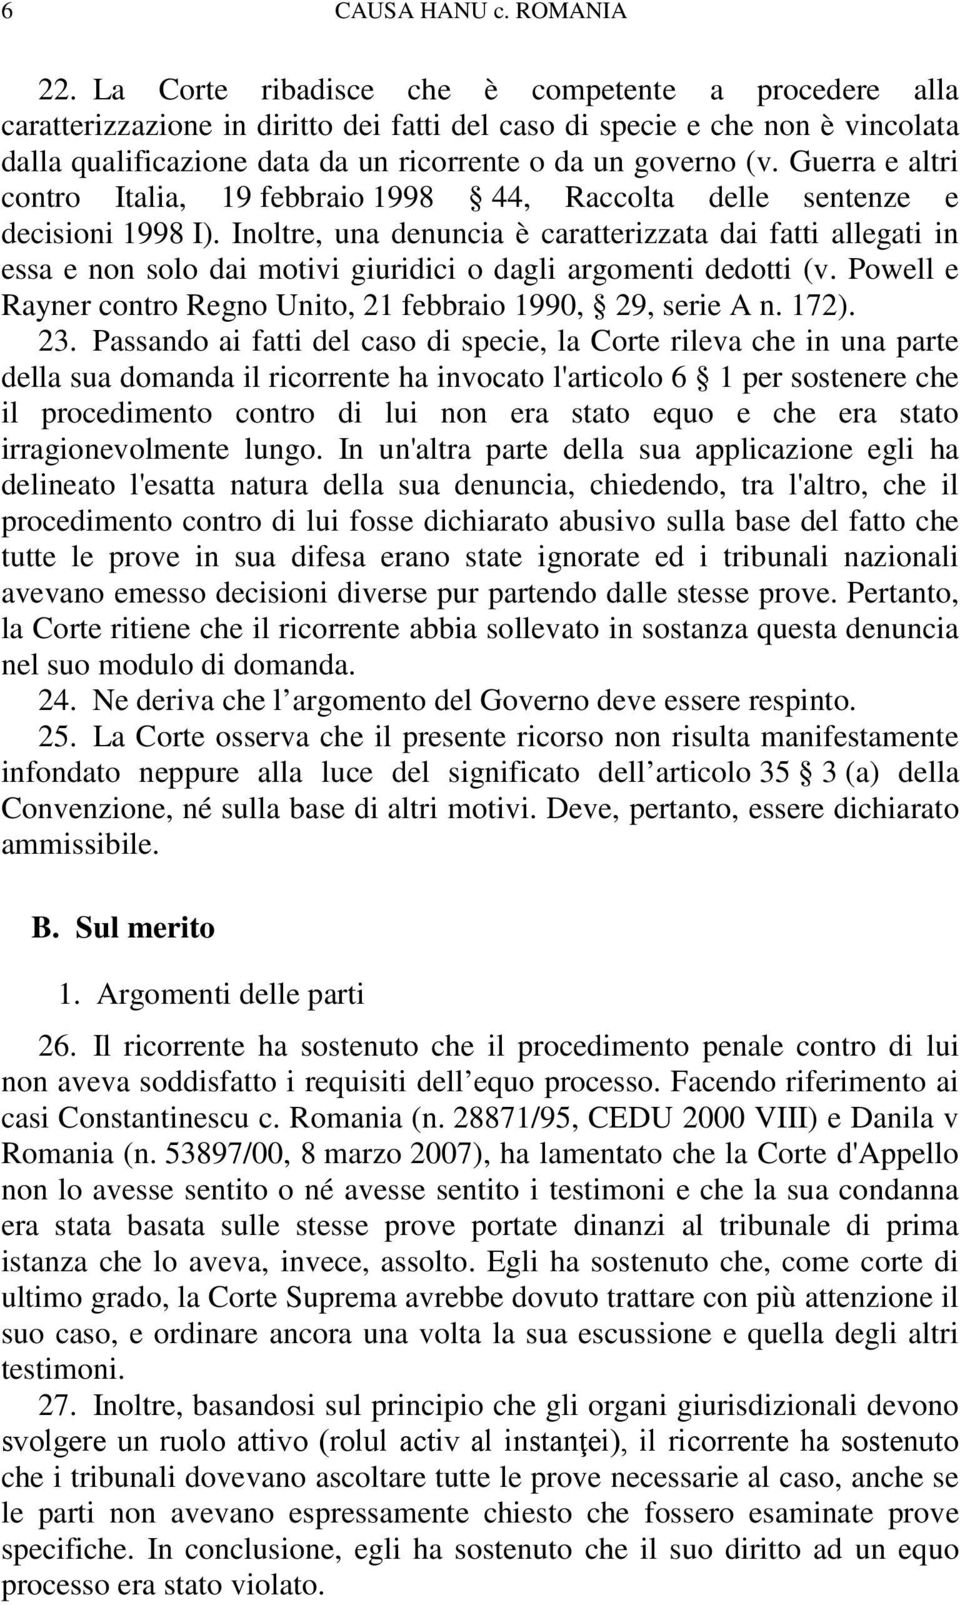 Guerra e altri contro Italia, 19 febbraio 1998 44, Raccolta delle sentenze e decisioni 1998 I).